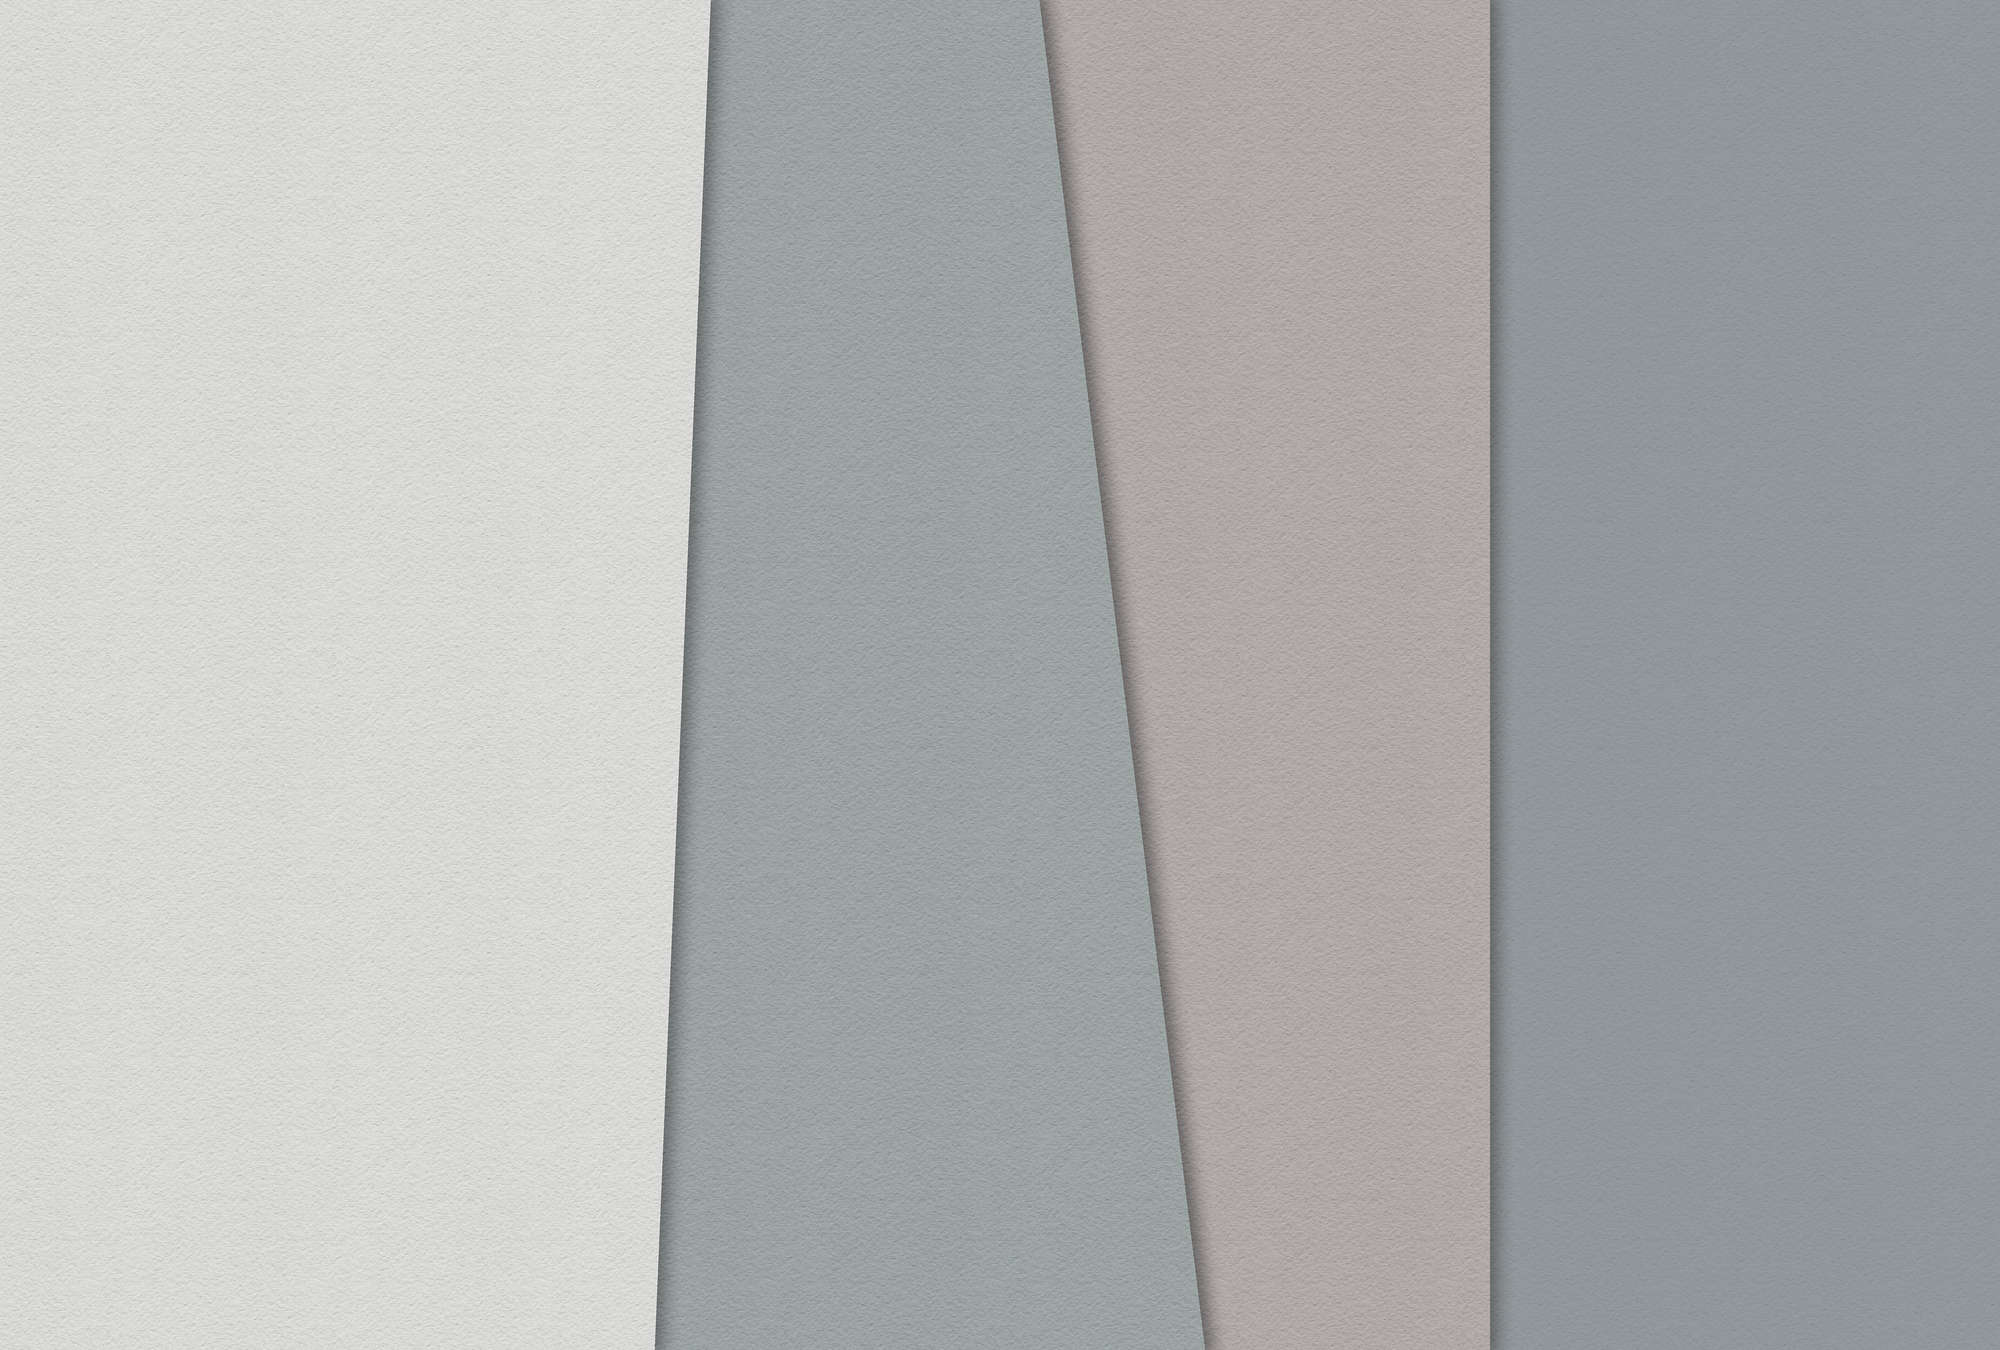             Layered paper 1 - Grafische Fototapete mit Farbflächen in Büttenpapier Struktur – Blau, Creme | Mattes Glattvlies
        